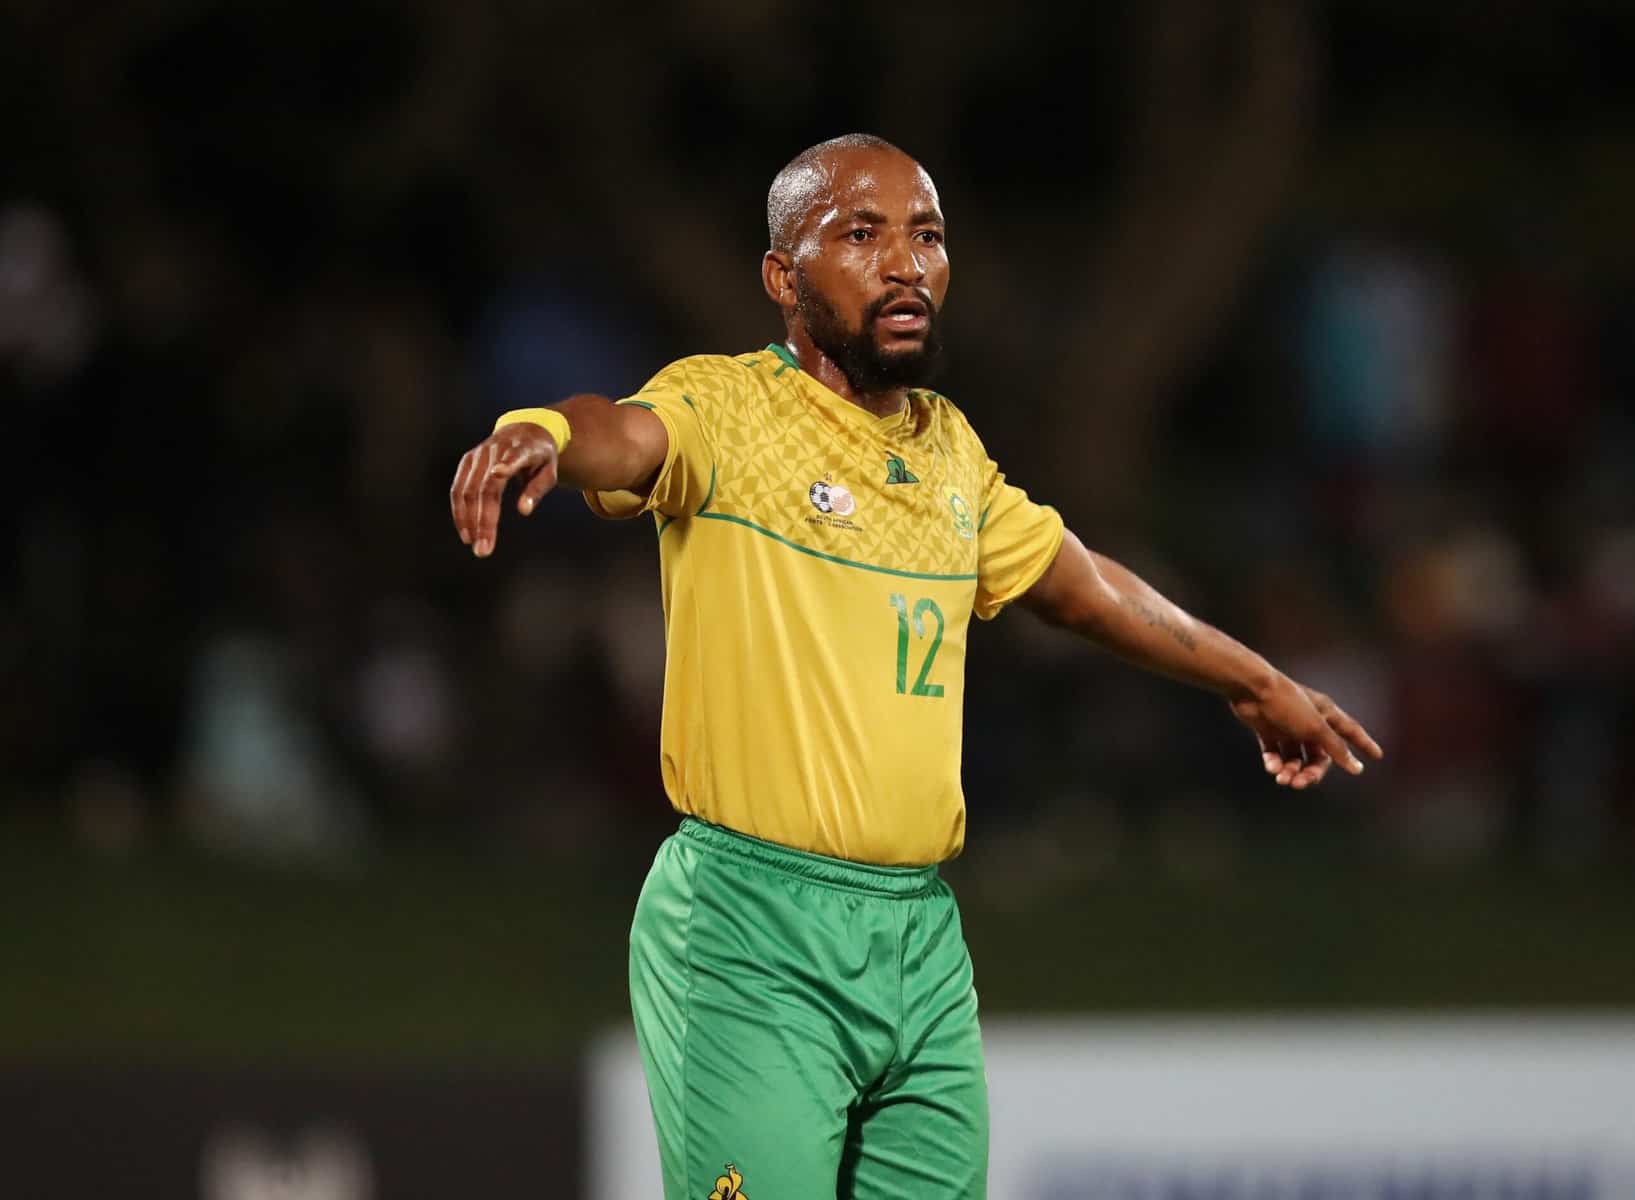 Kaizer Chiefs player Sibongiseni Mthethwa